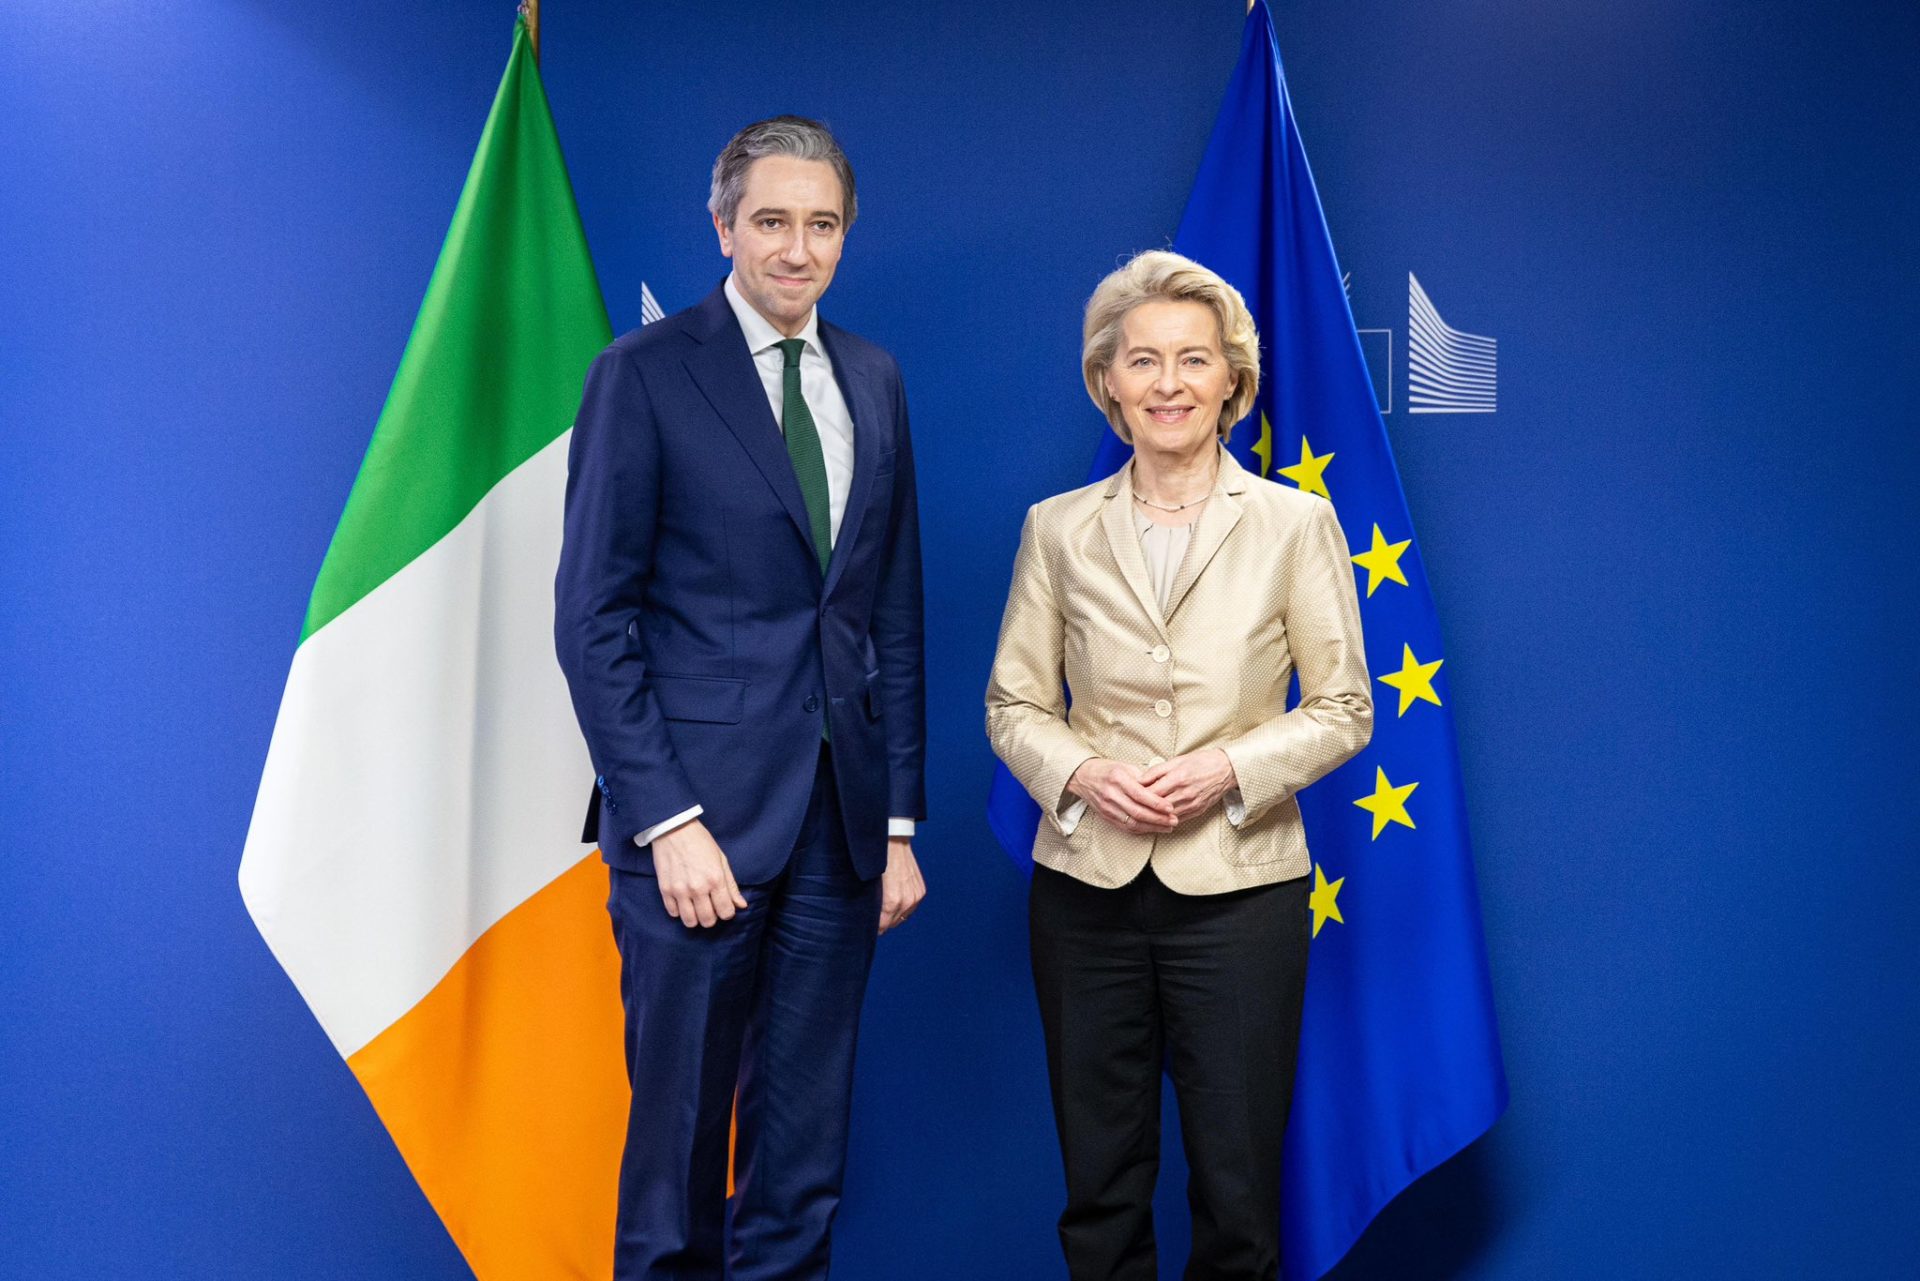 Taoiseach Simon Harris with European Commission President Ursula von der Leyen in Brussels, 11-4-24